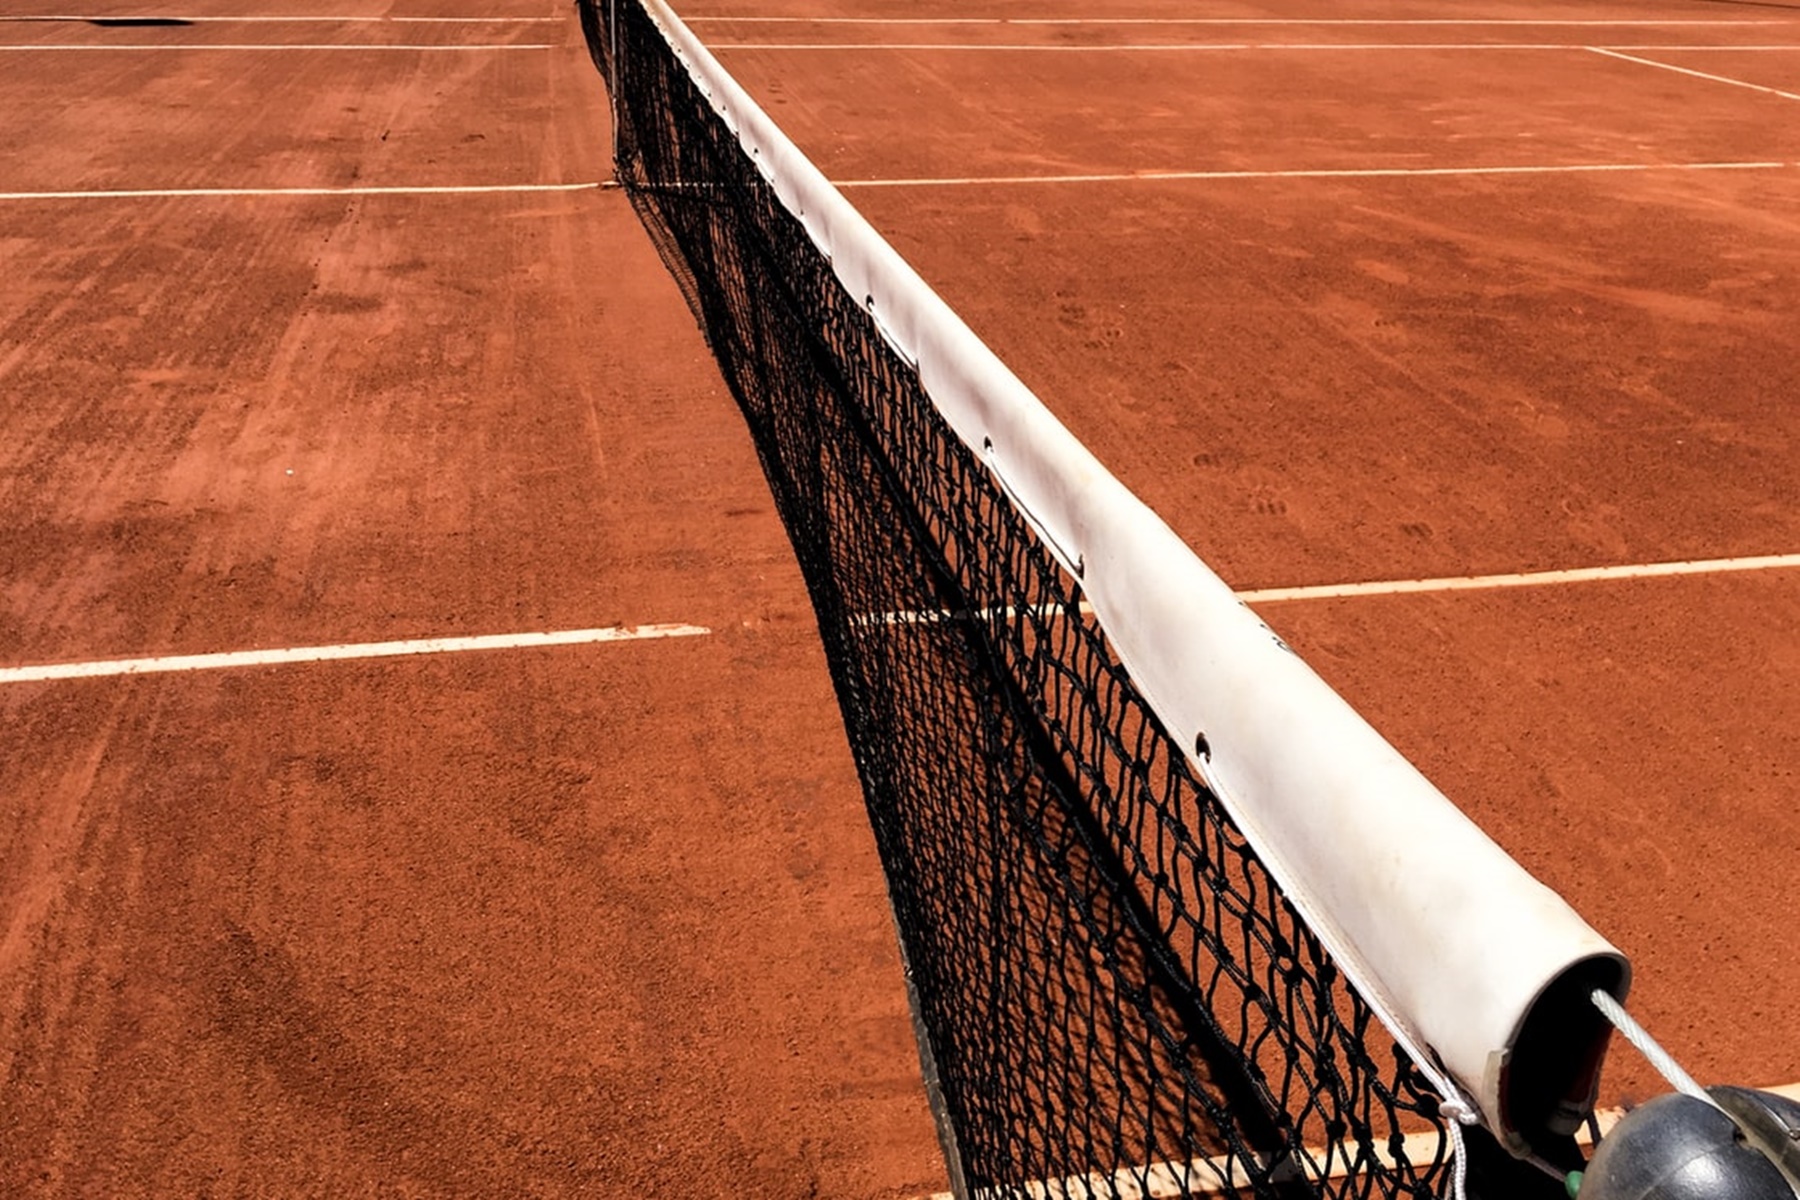 Προπονητής τένις φυλακή: “Έκανα ένα λάθος”, είπε ο 35χρονος